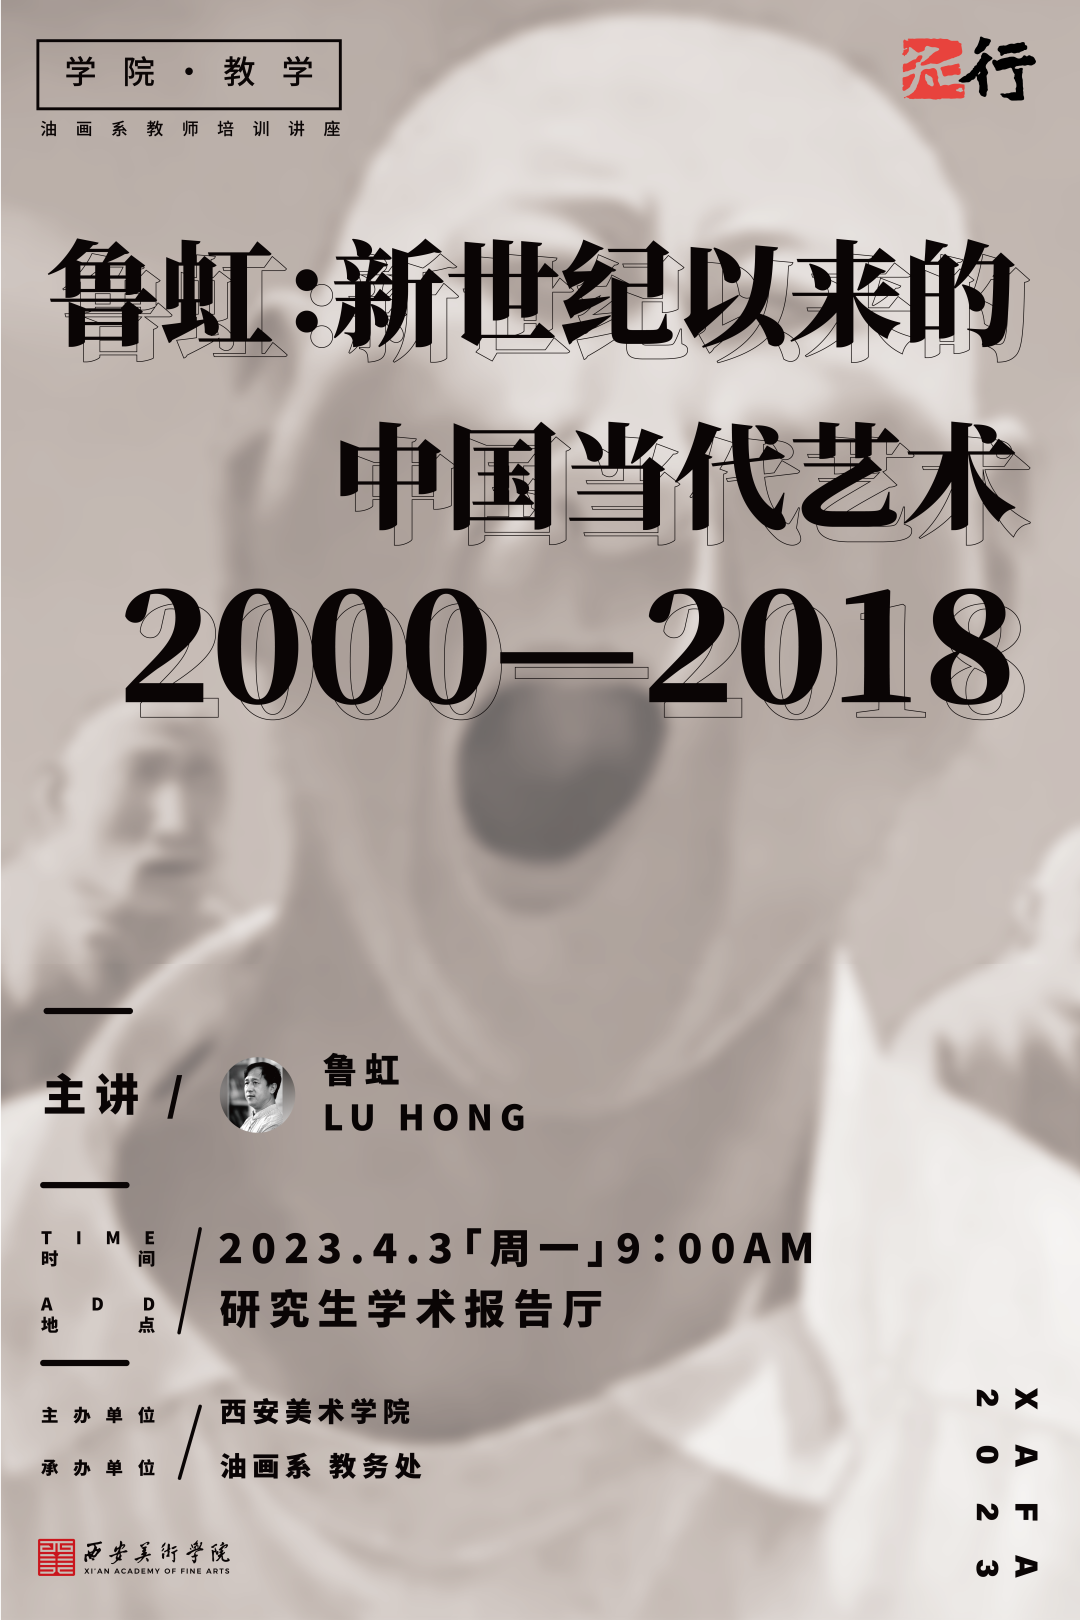 著名艺术家鲁虹主讲，“新世纪以来的中国当代艺术 2000-2018”今日在西安美术学院开讲